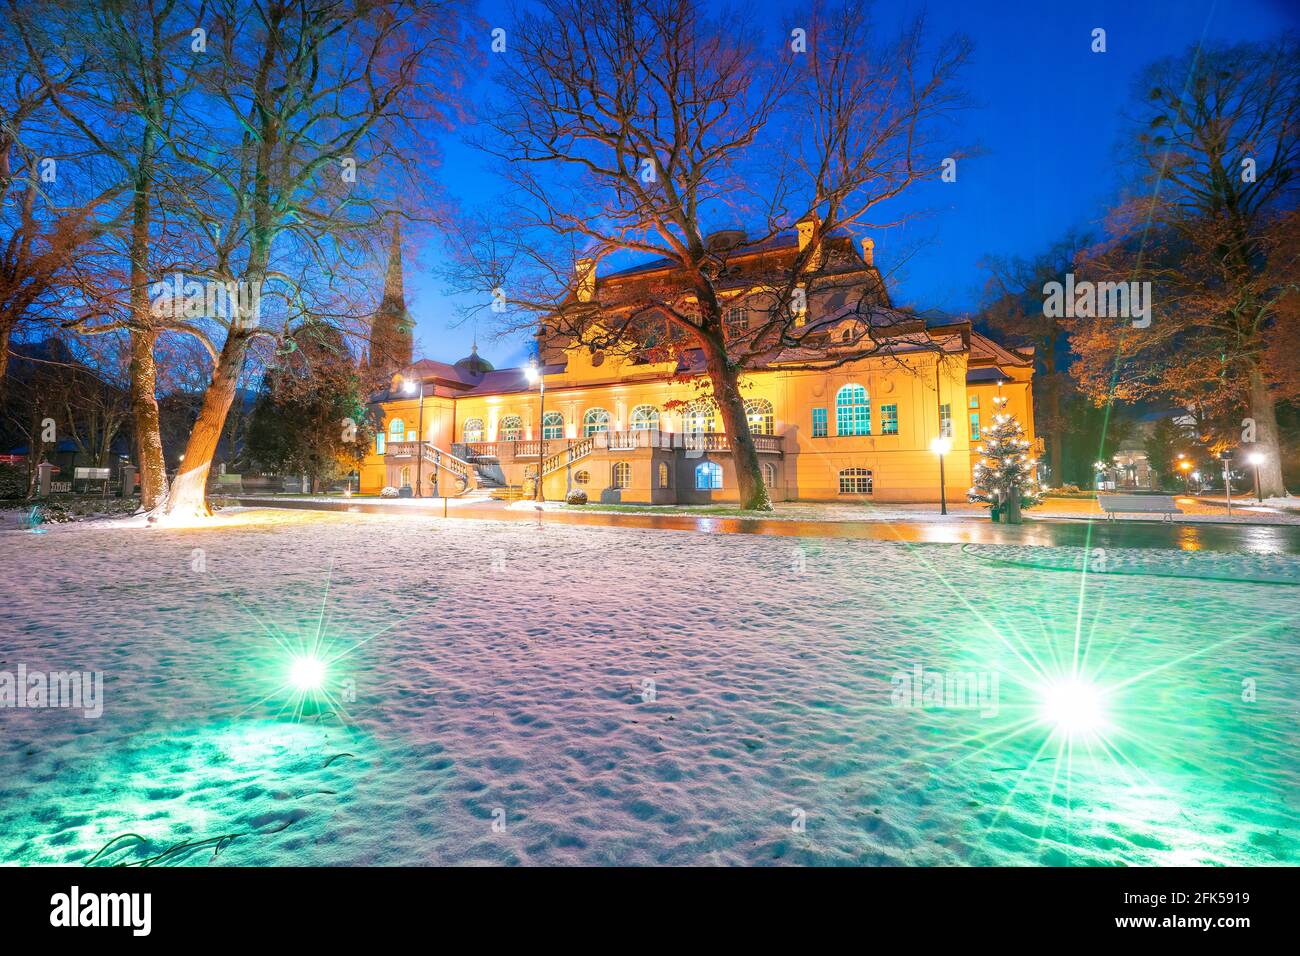 Hiver - Weihnacht im abendlich-nächtlich-beleuchteten Kurgarten von Bad Reichenhalldas Alte Kurhaus Banque D'Images